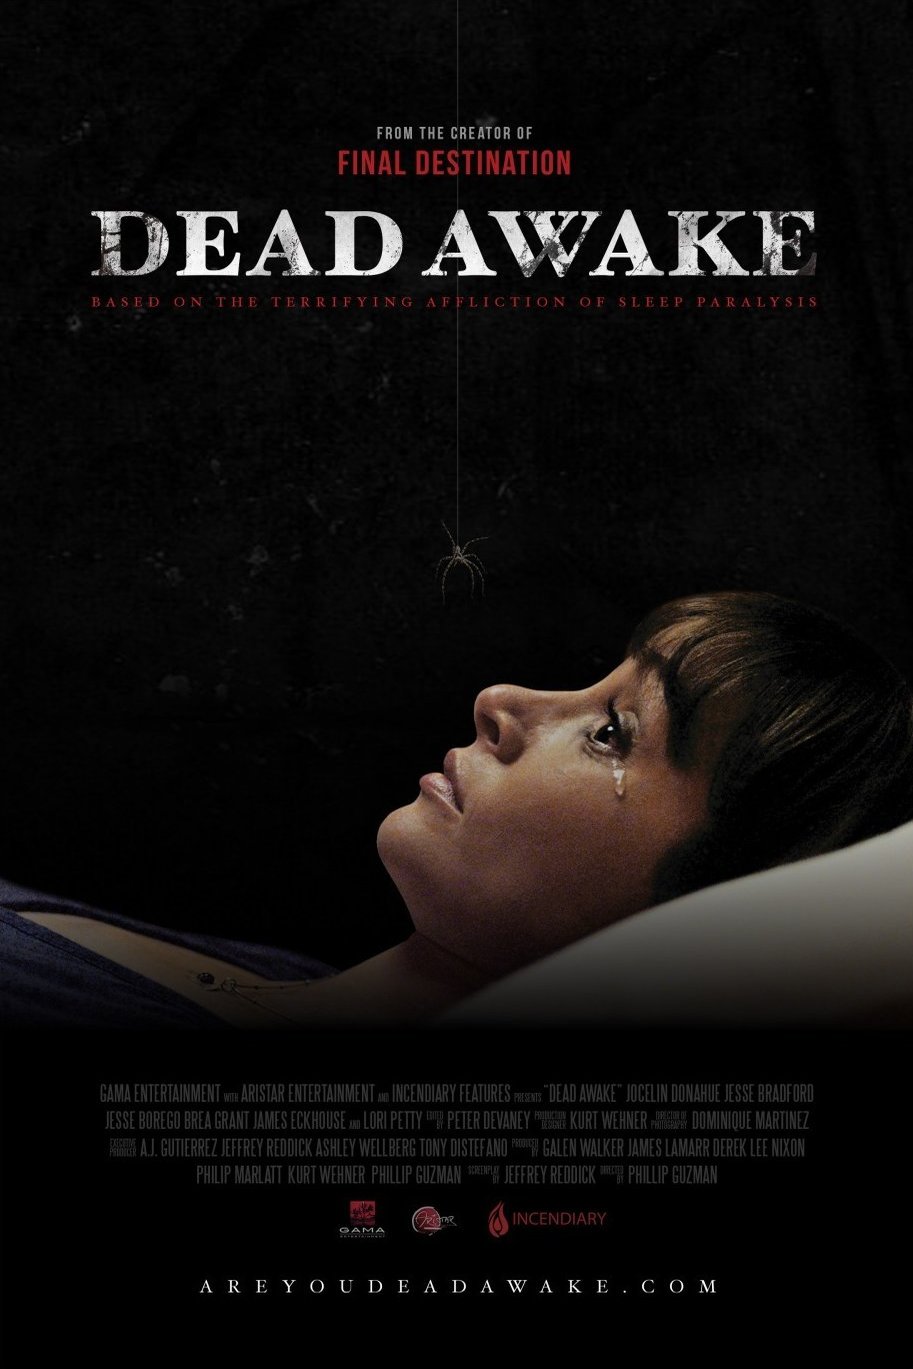 L'affiche du film Dead Awake